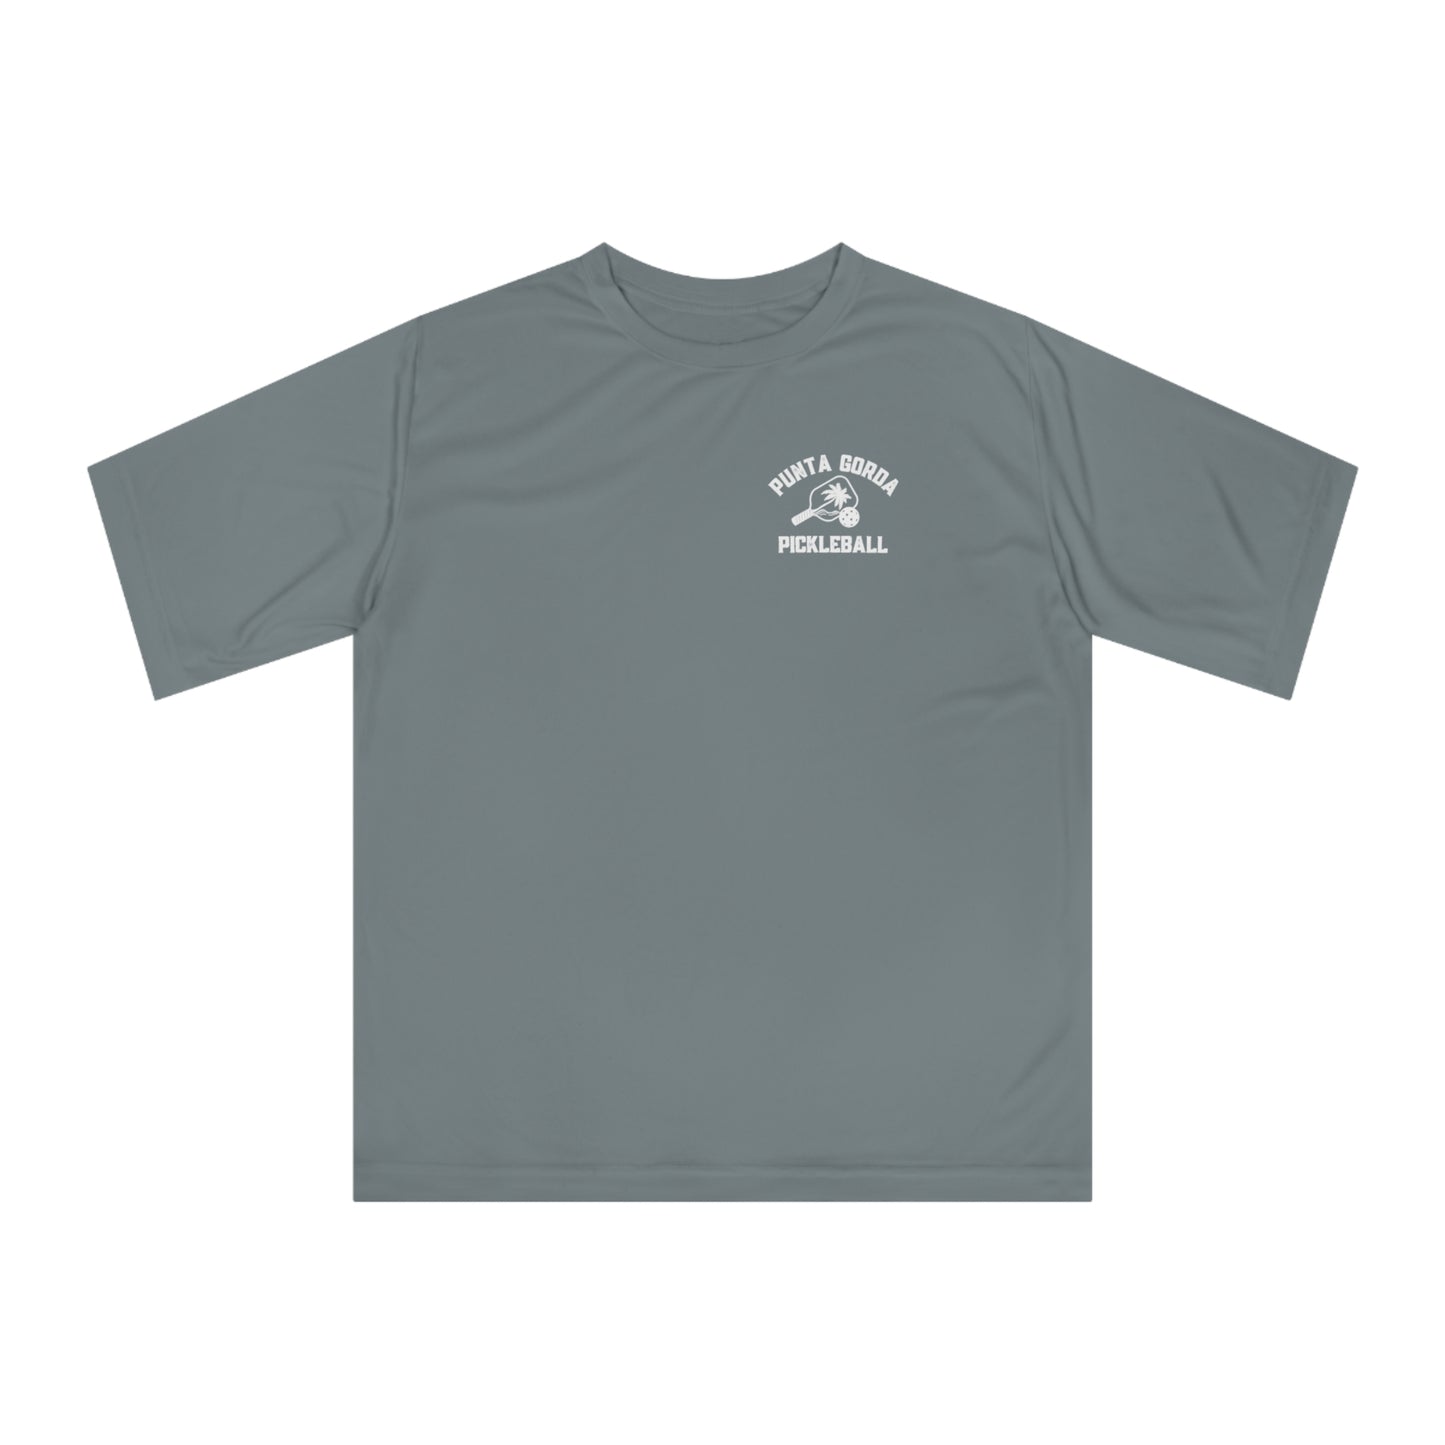 Punta Gorda Pickleball - Men’s/Unisex SPF 40 Moisture Wicking - Performance T-shirt